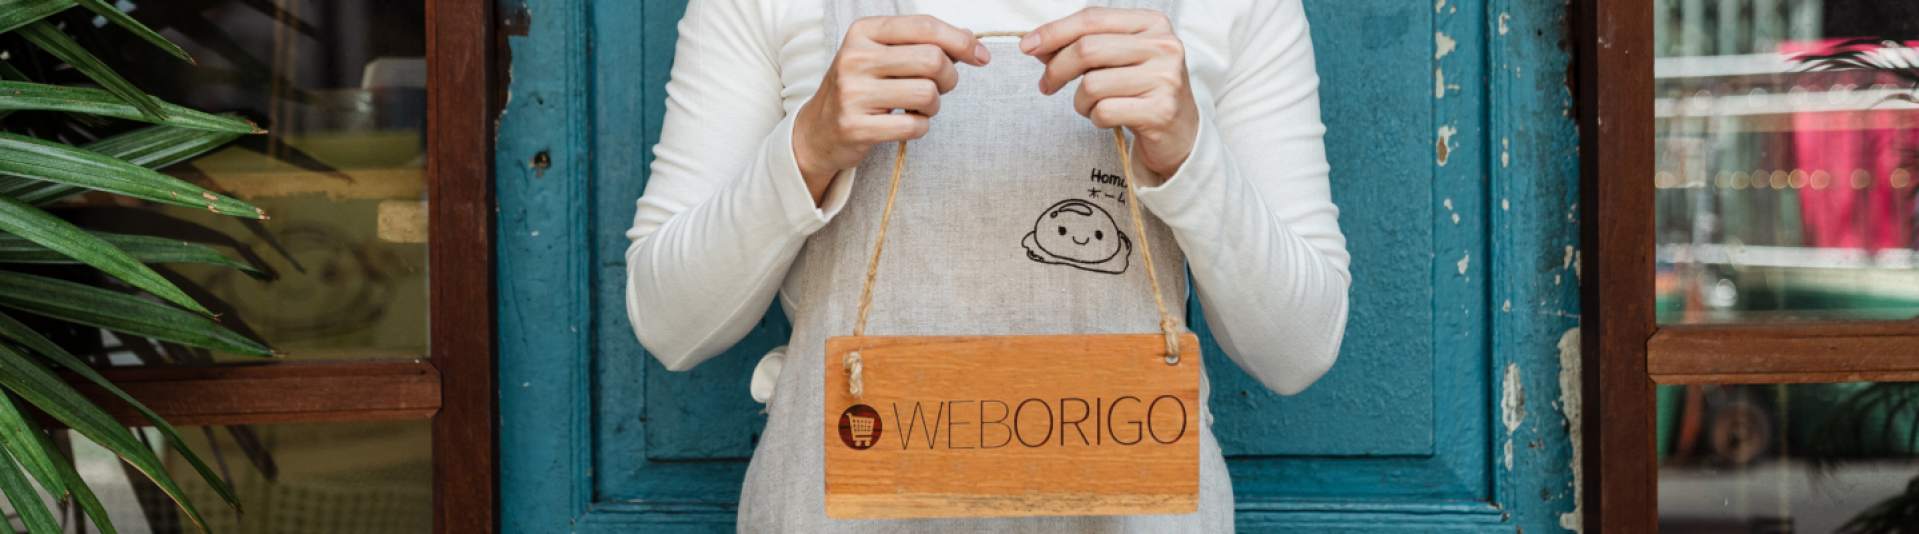 WebOrigo Small Businesses Banner